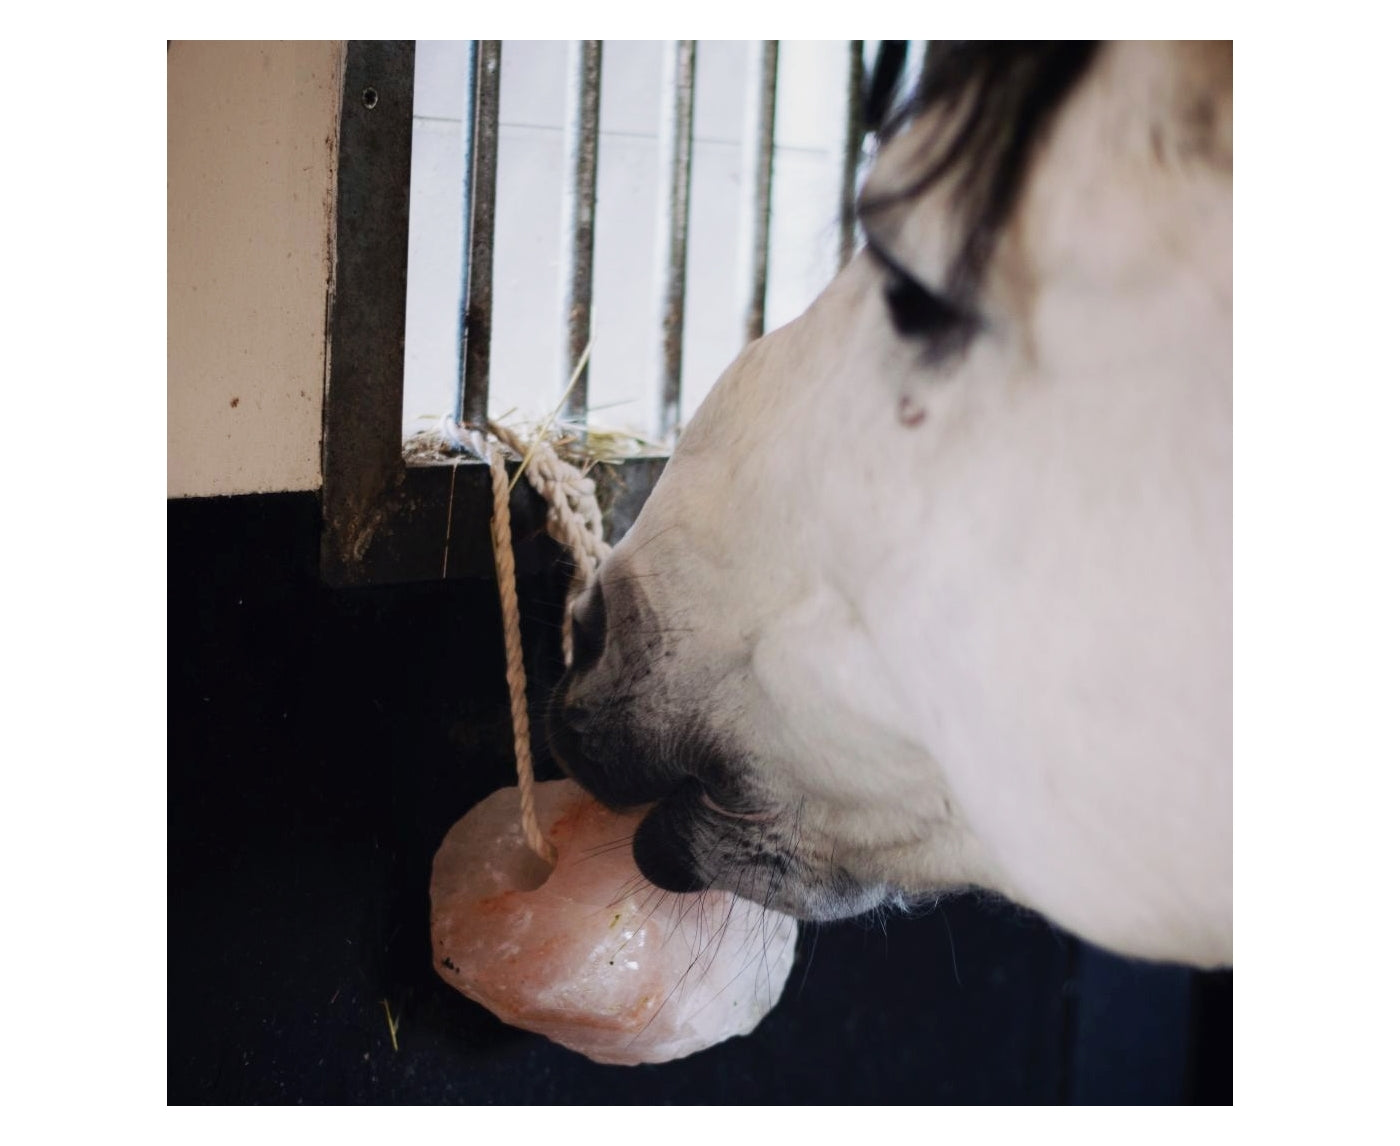 KM Elite - Himalayan Salt Licks for Horses - Buy Online SPR Centre UK